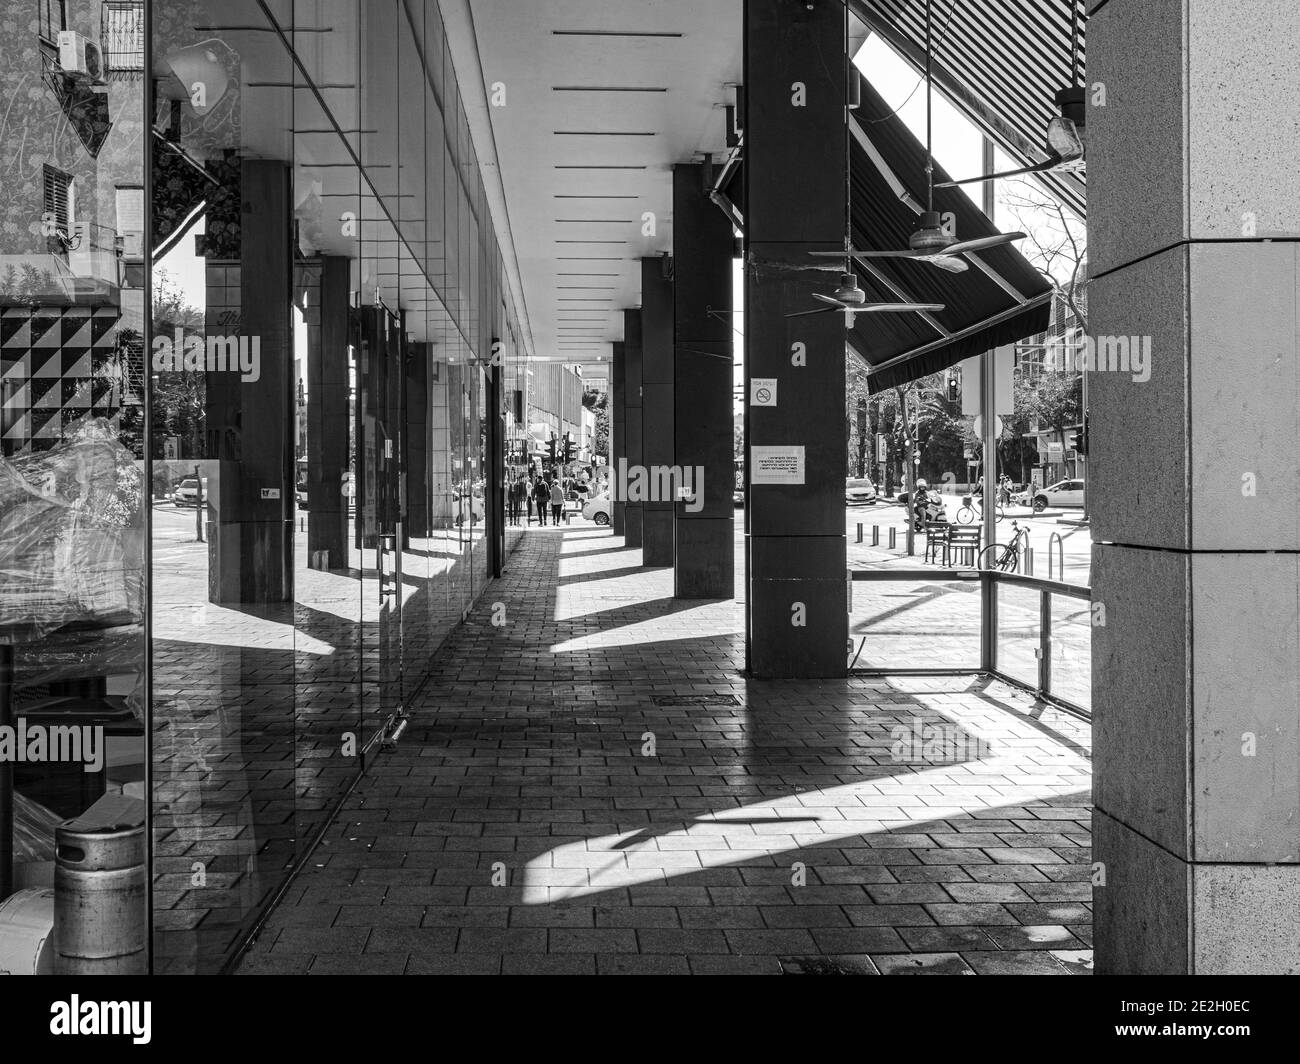 image en noir et blanc avec vue sur la chaussée avec parasol et colonnade le long des magasins Banque D'Images